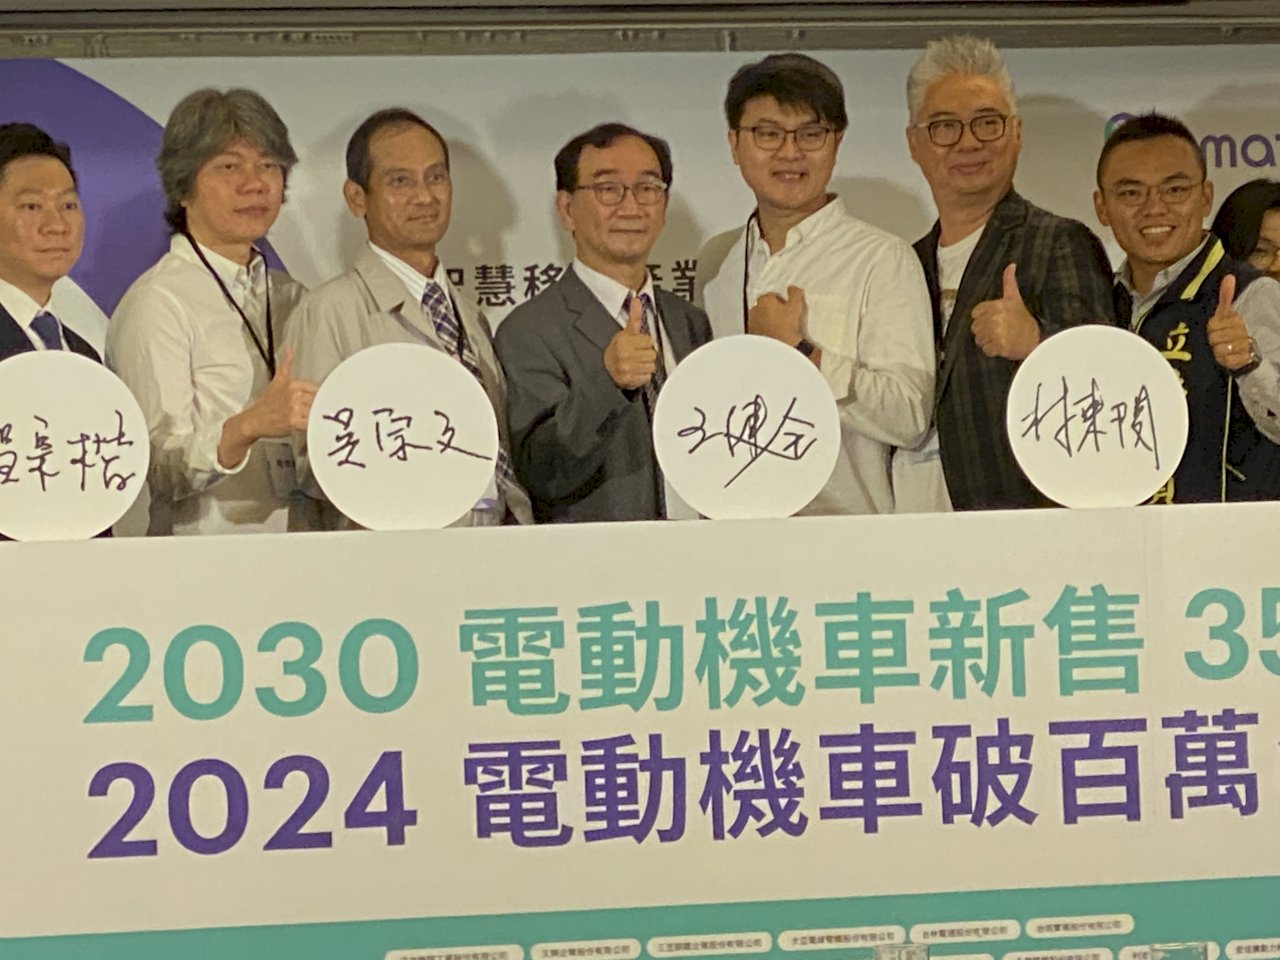 台灣智慧移動產業大連署  籲「2030年電動機車新售 35%」